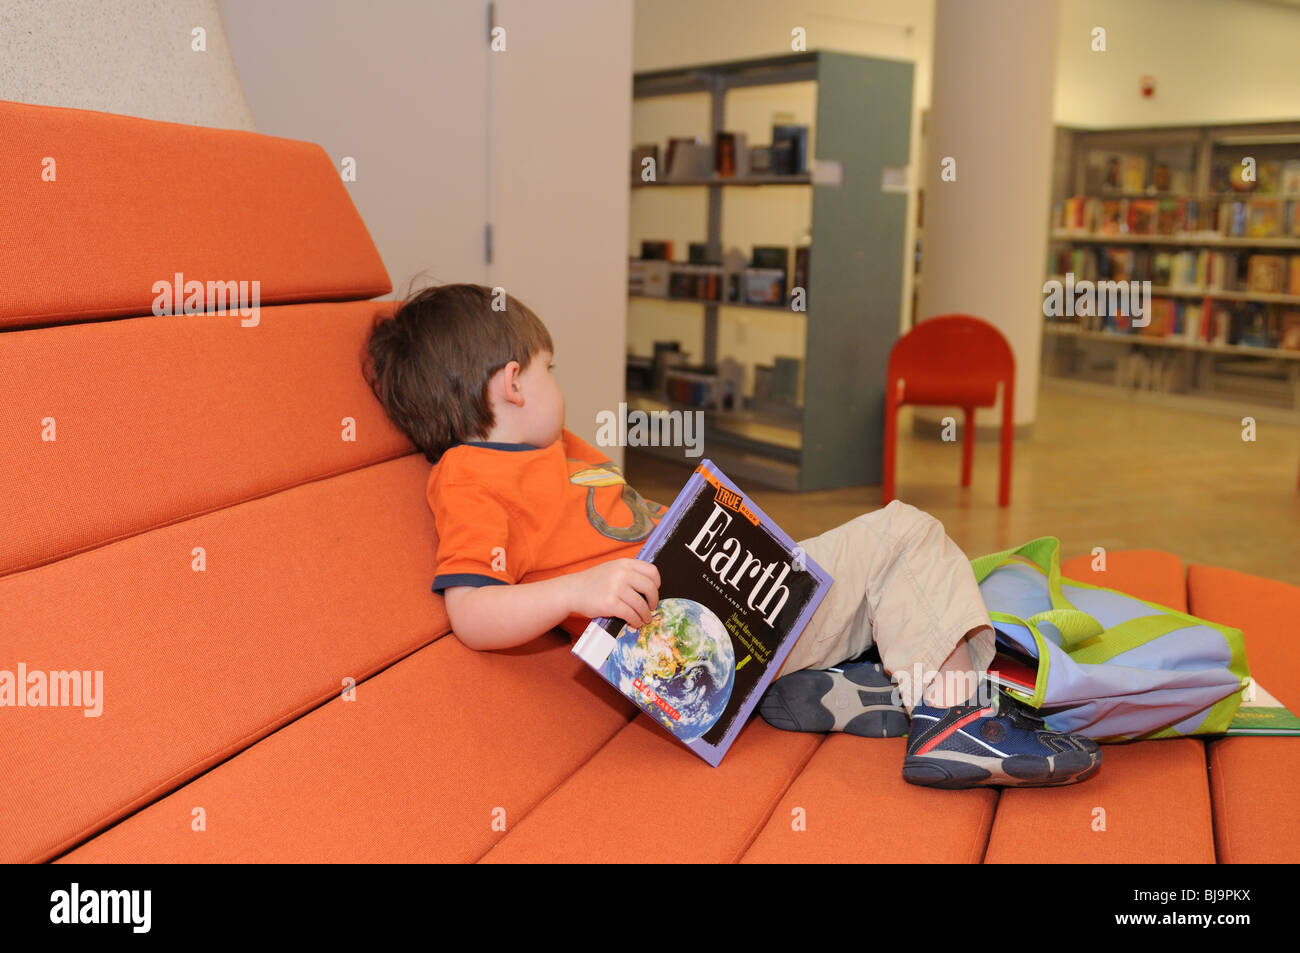 Le jour de l'ouverture de la bibliothèque de Battery Park City, un garçon de trois ans qui a trouvé un livre sur terre à lire. Banque D'Images